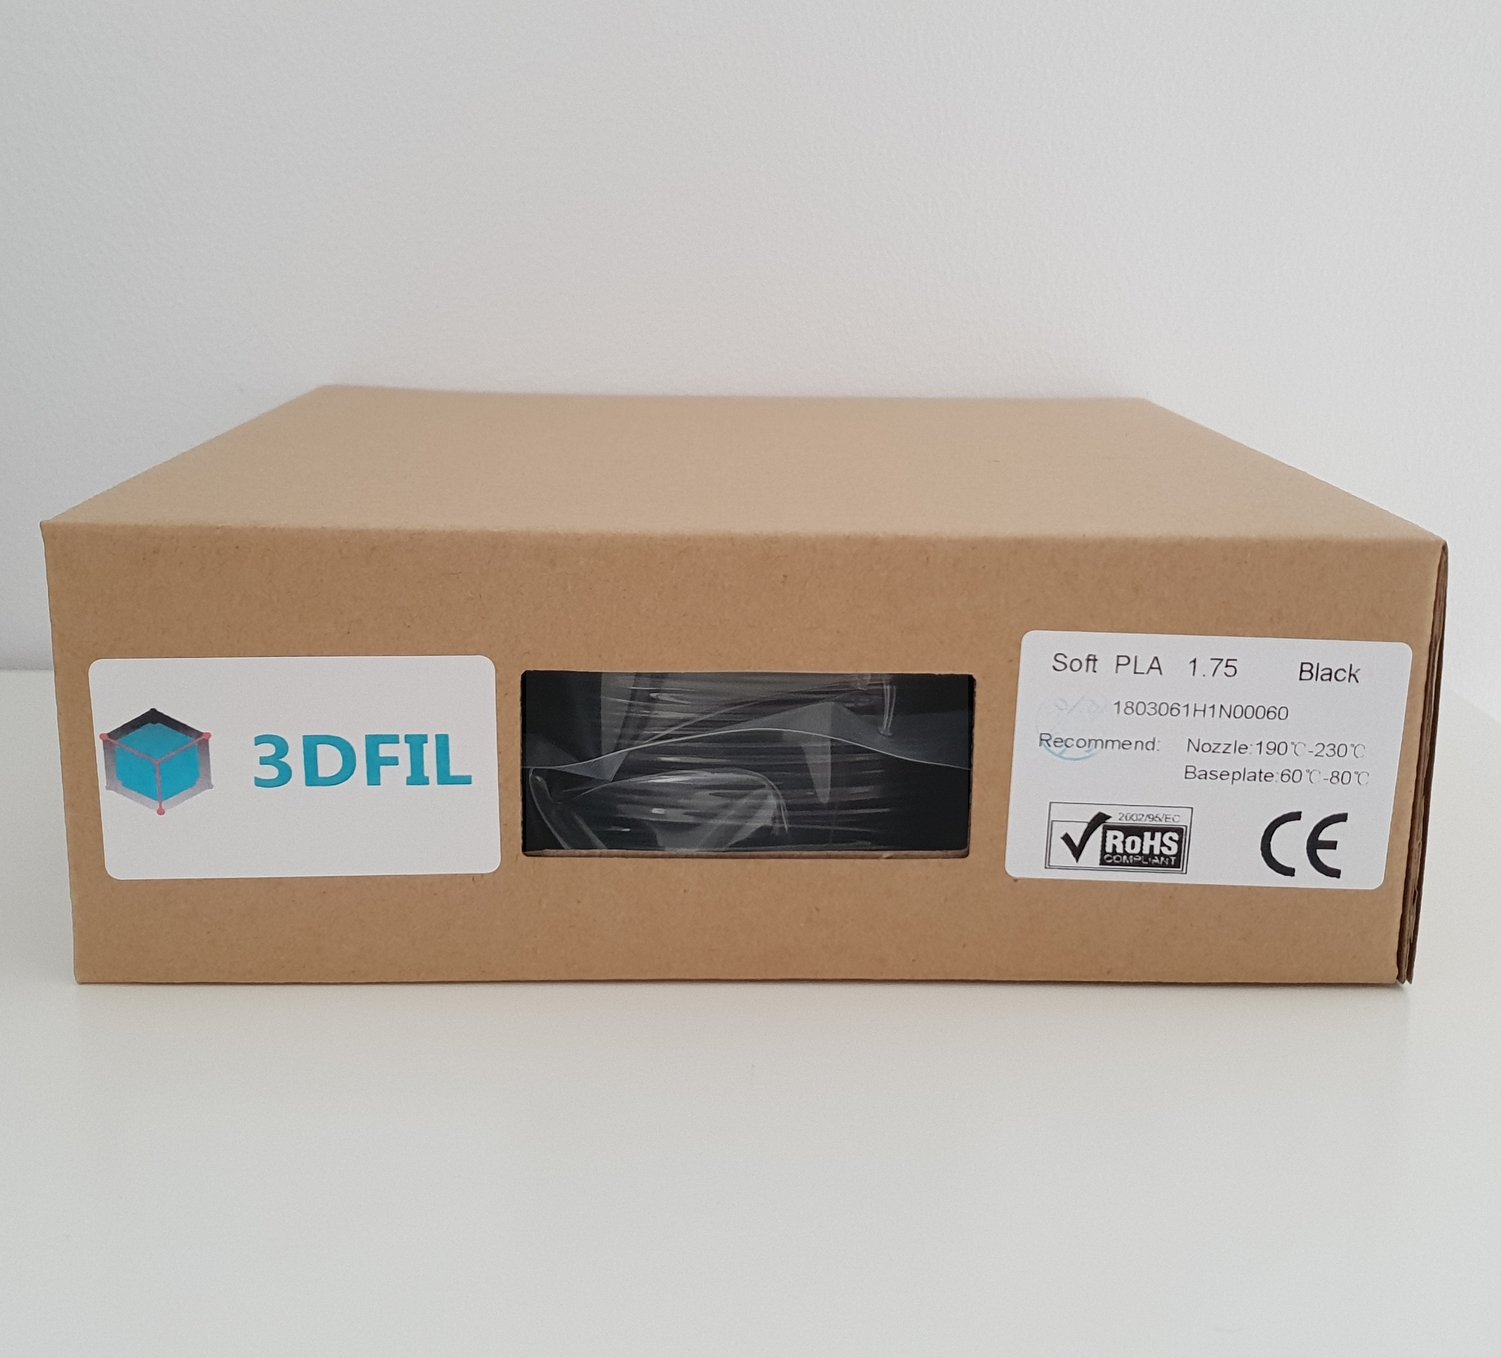 Bobine 500g Flexible Noir - 1,75mm - 3DFIL - Fil 3D premium pas cher